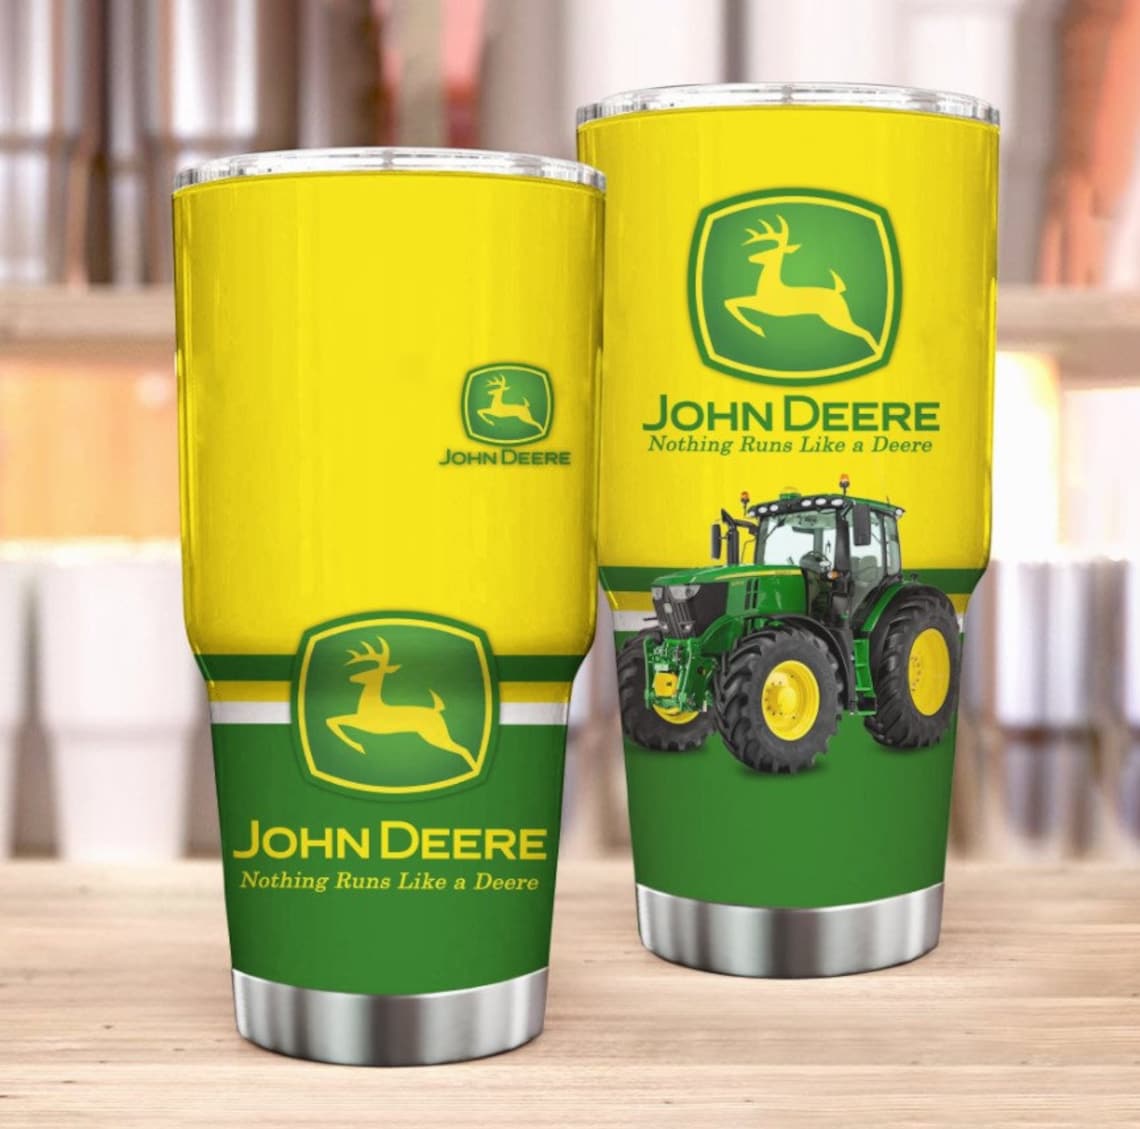 John Deere Tractor Tumbler Farmer Gifts Farmers Wife | Etsy